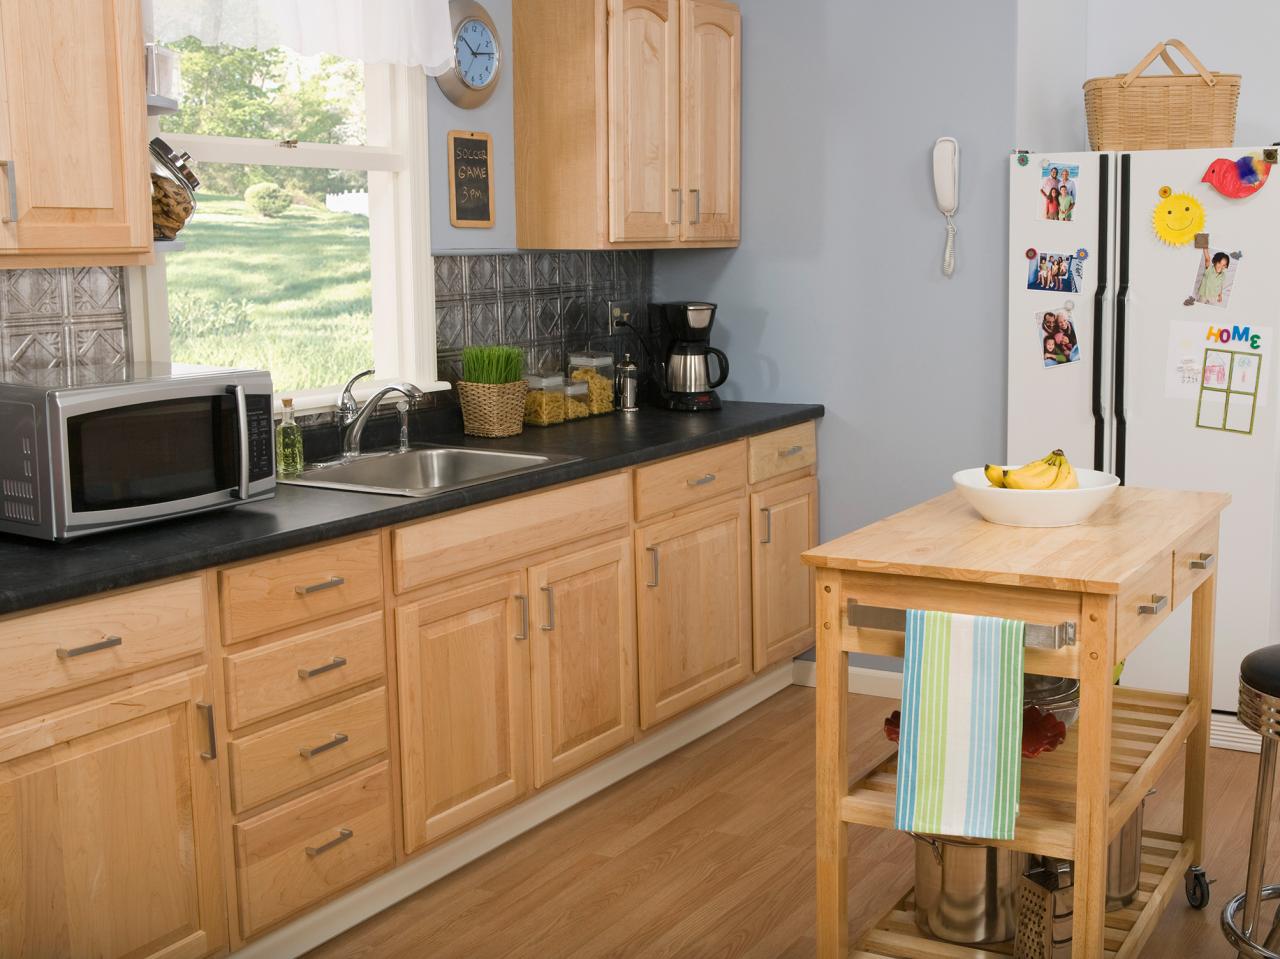 Oak Kitchen Cabinets Pictures Options, Oak Cabinet Kitchen Paint Colors 2021